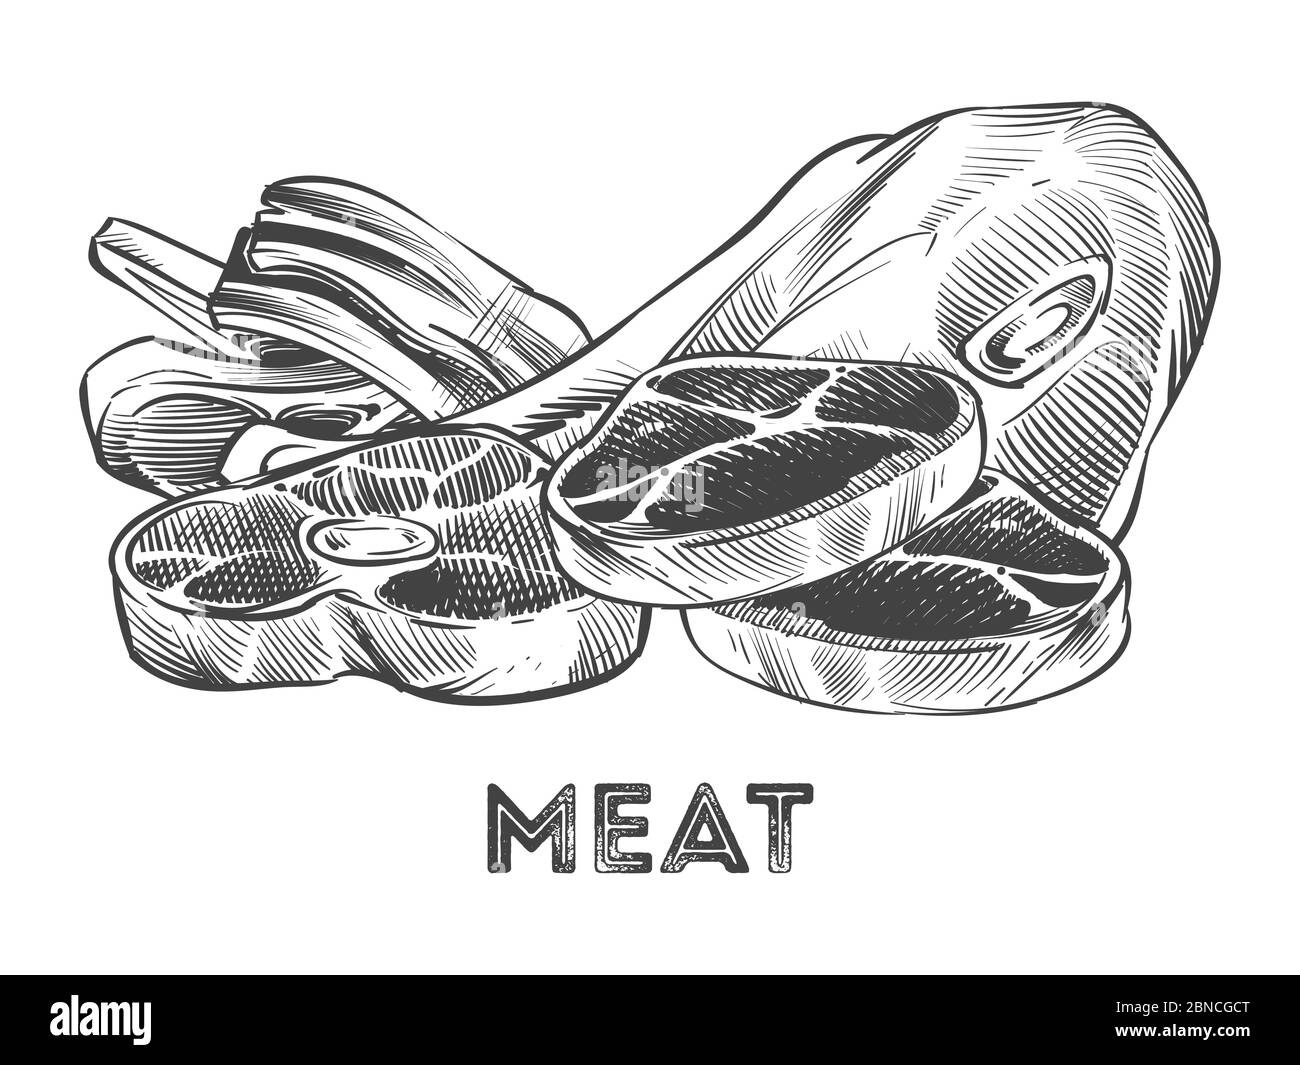 Handgezeichnetes Steak, Rippchen, frisches Fleisch auf weißem Hintergrund isoliert. Vektorgrafik Stock Vektor